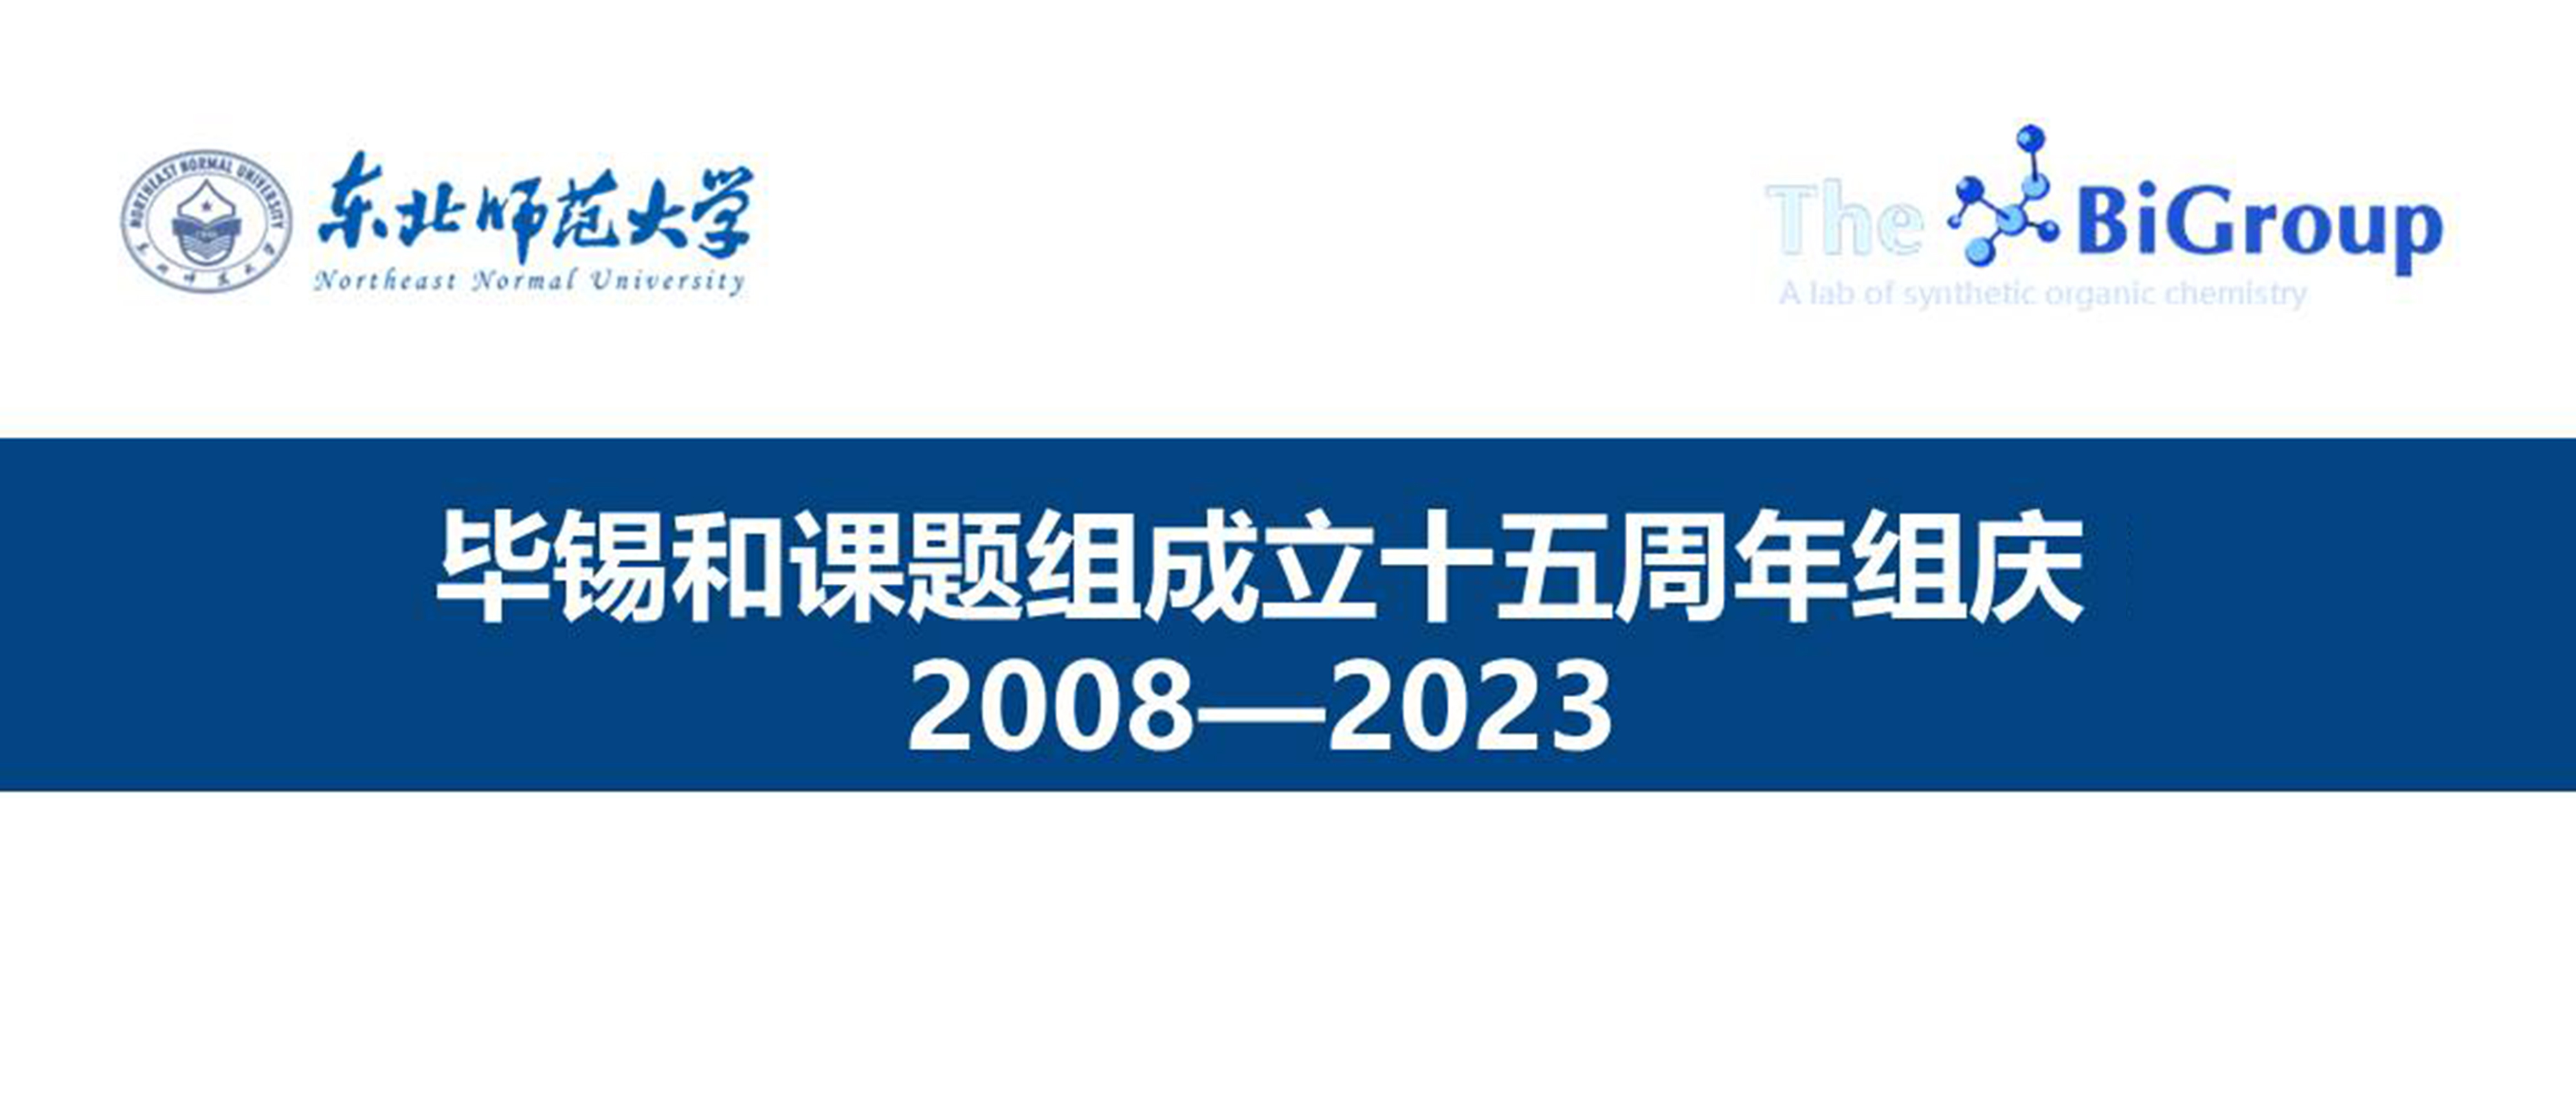 毕锡和课题组十五周年组庆 (2008年—2023年）